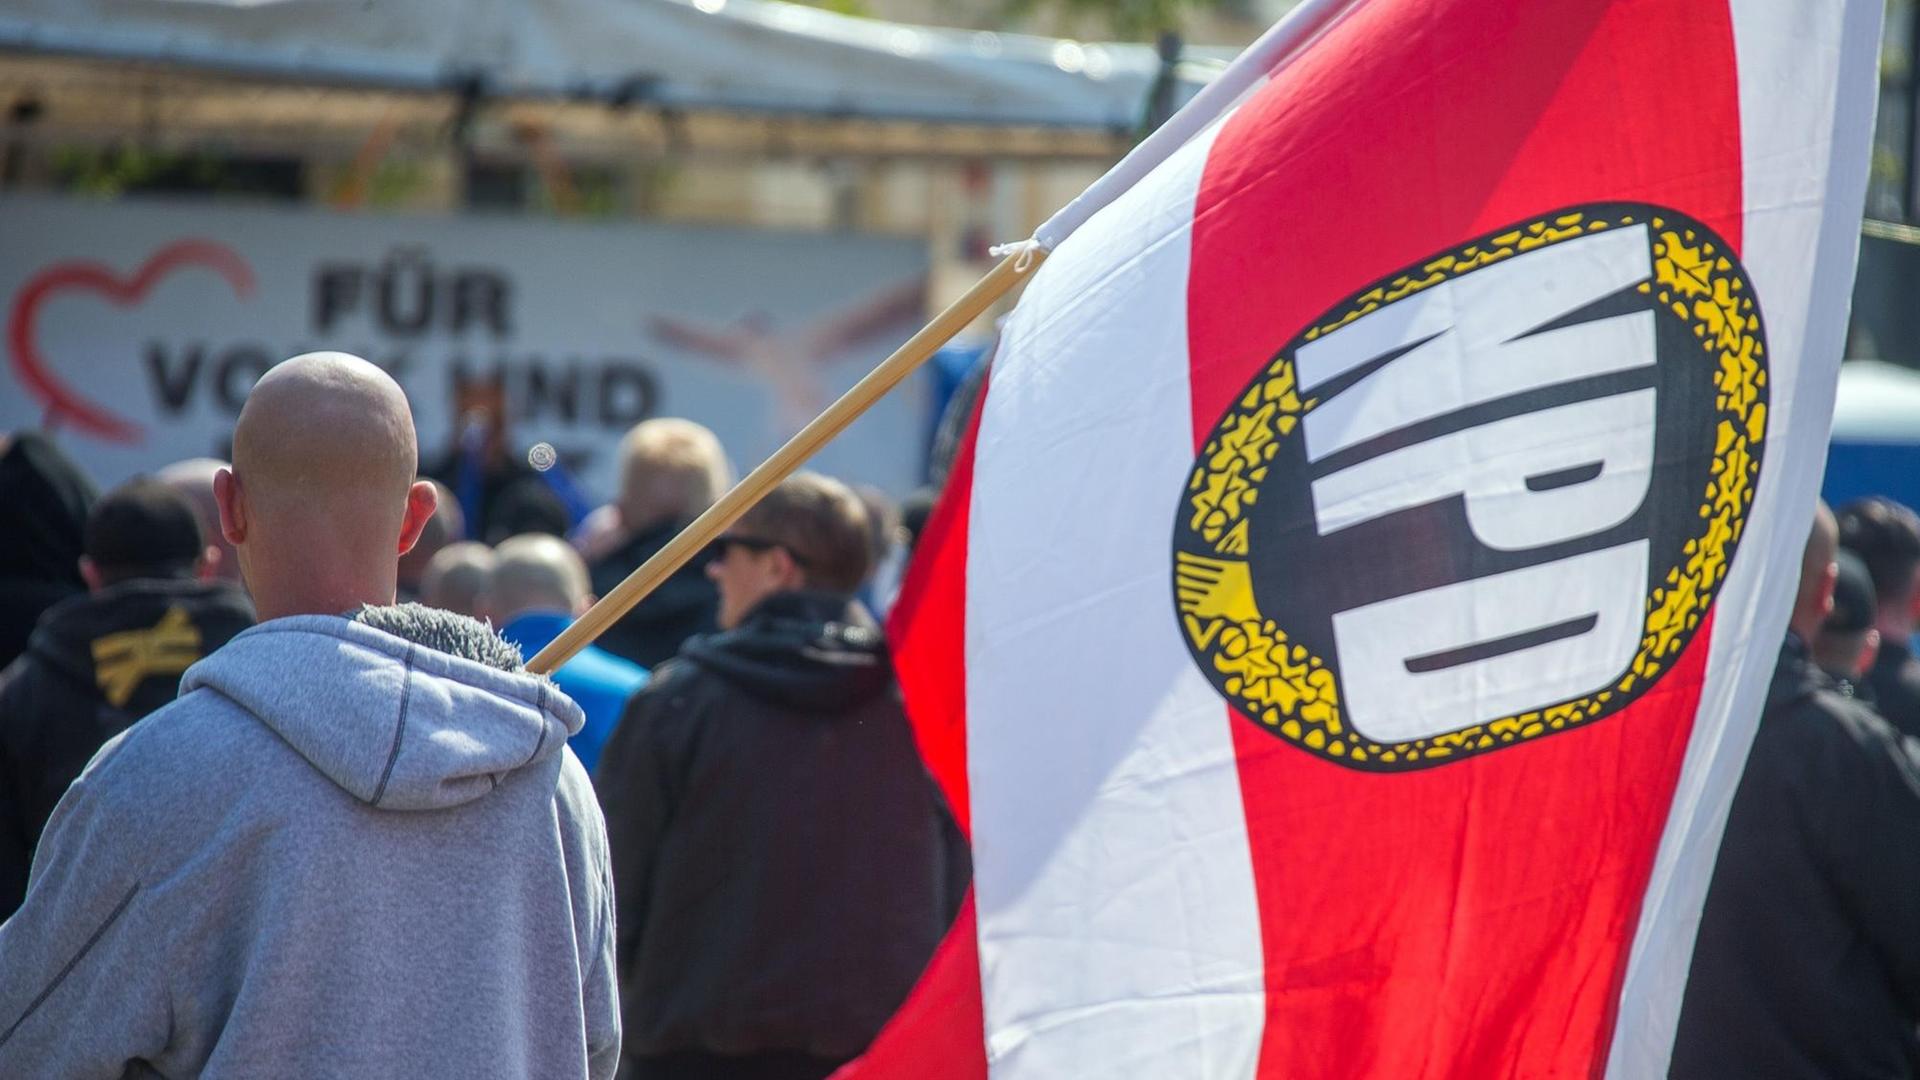 Teilnehmer einer Kundgebung der NPD am 01.05.2016 in der Innenstadt von Schwerin (Mecklenburg-Vorpommern) - einer trägt eine Fahne mit Logo der rechtsextremen Partei.